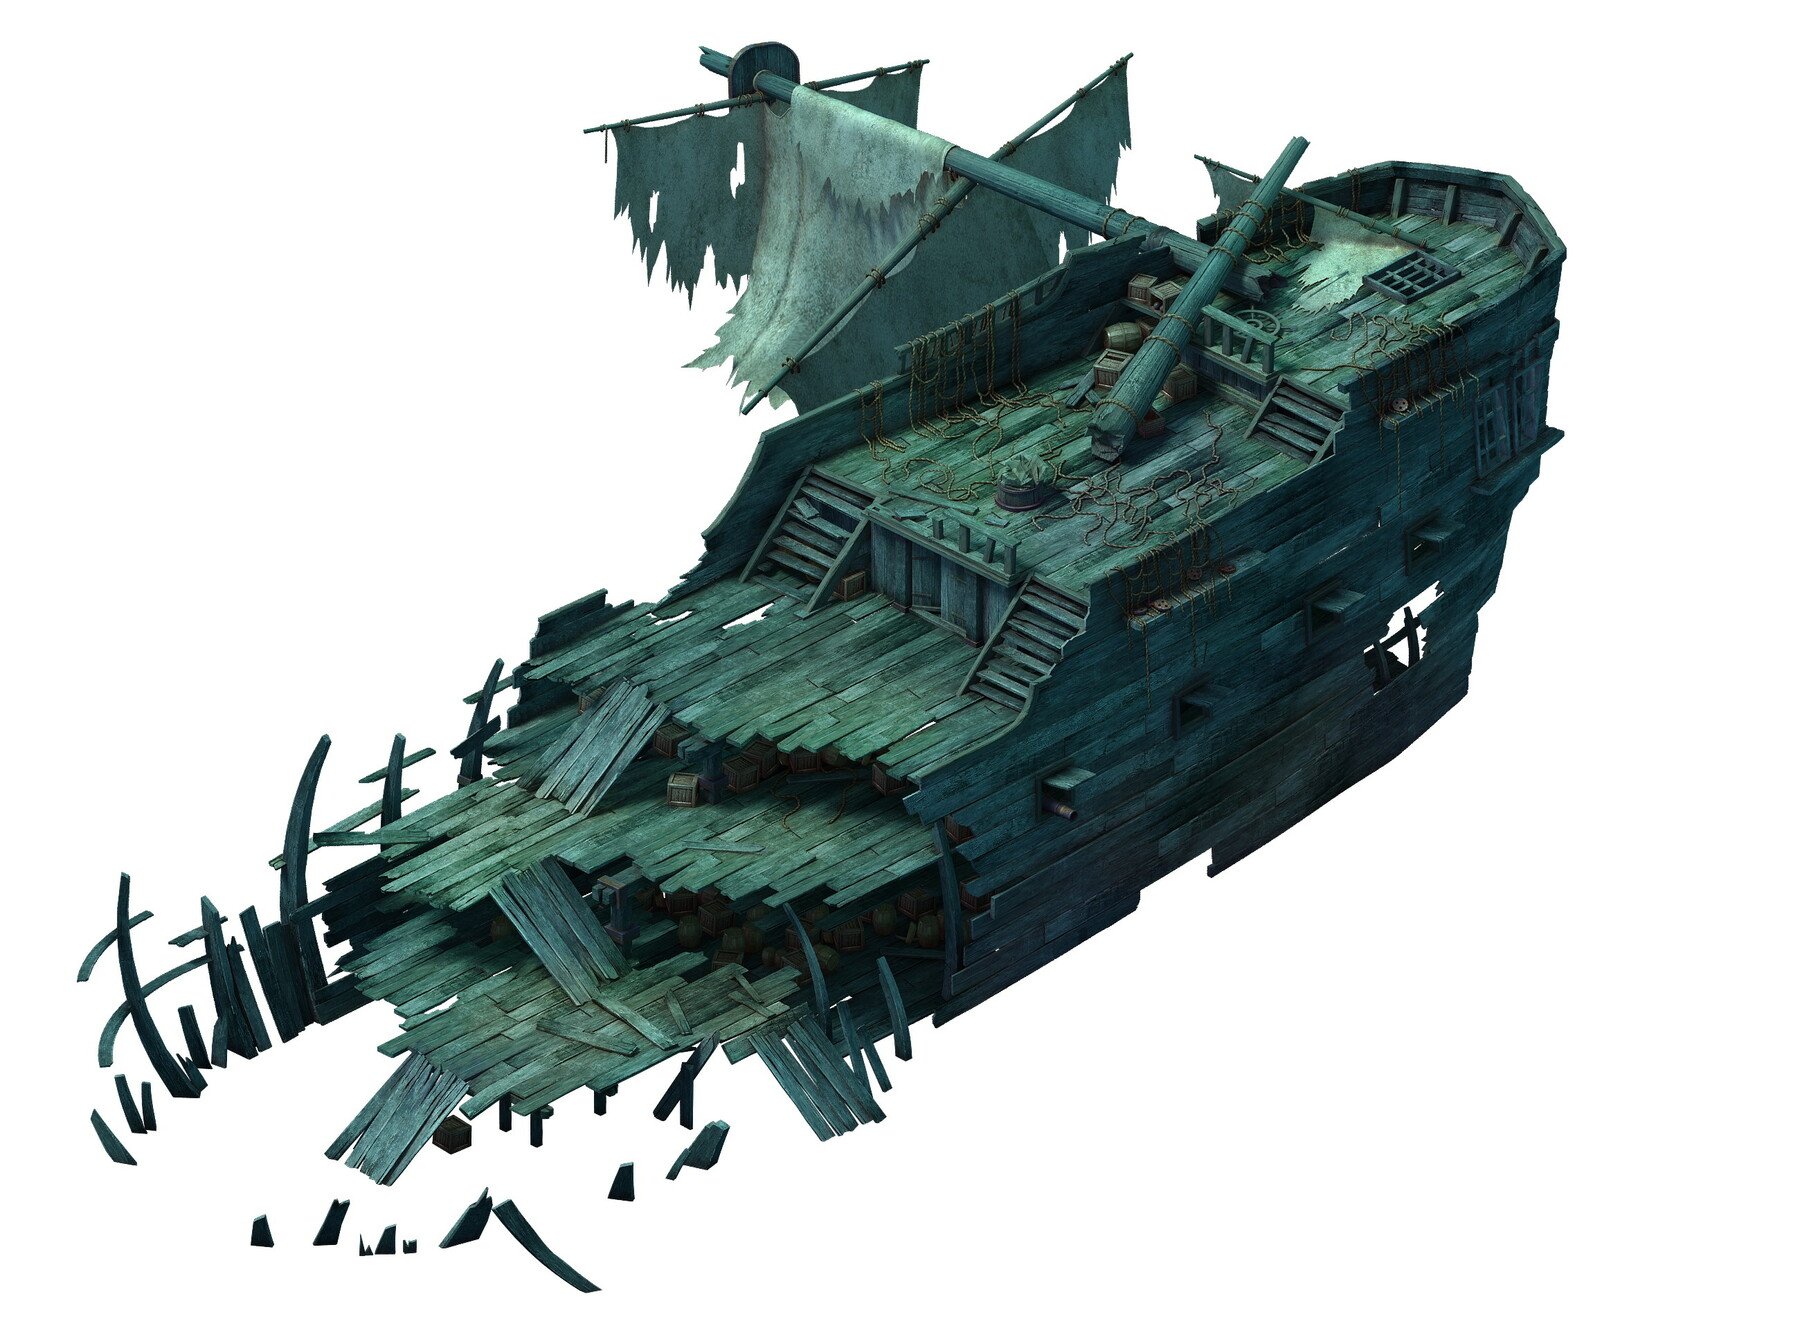 Разбейте три суда. 3д модель затонувшего корабля. Разбитый корабль. Обломки корабля. Разрушенный корабль.